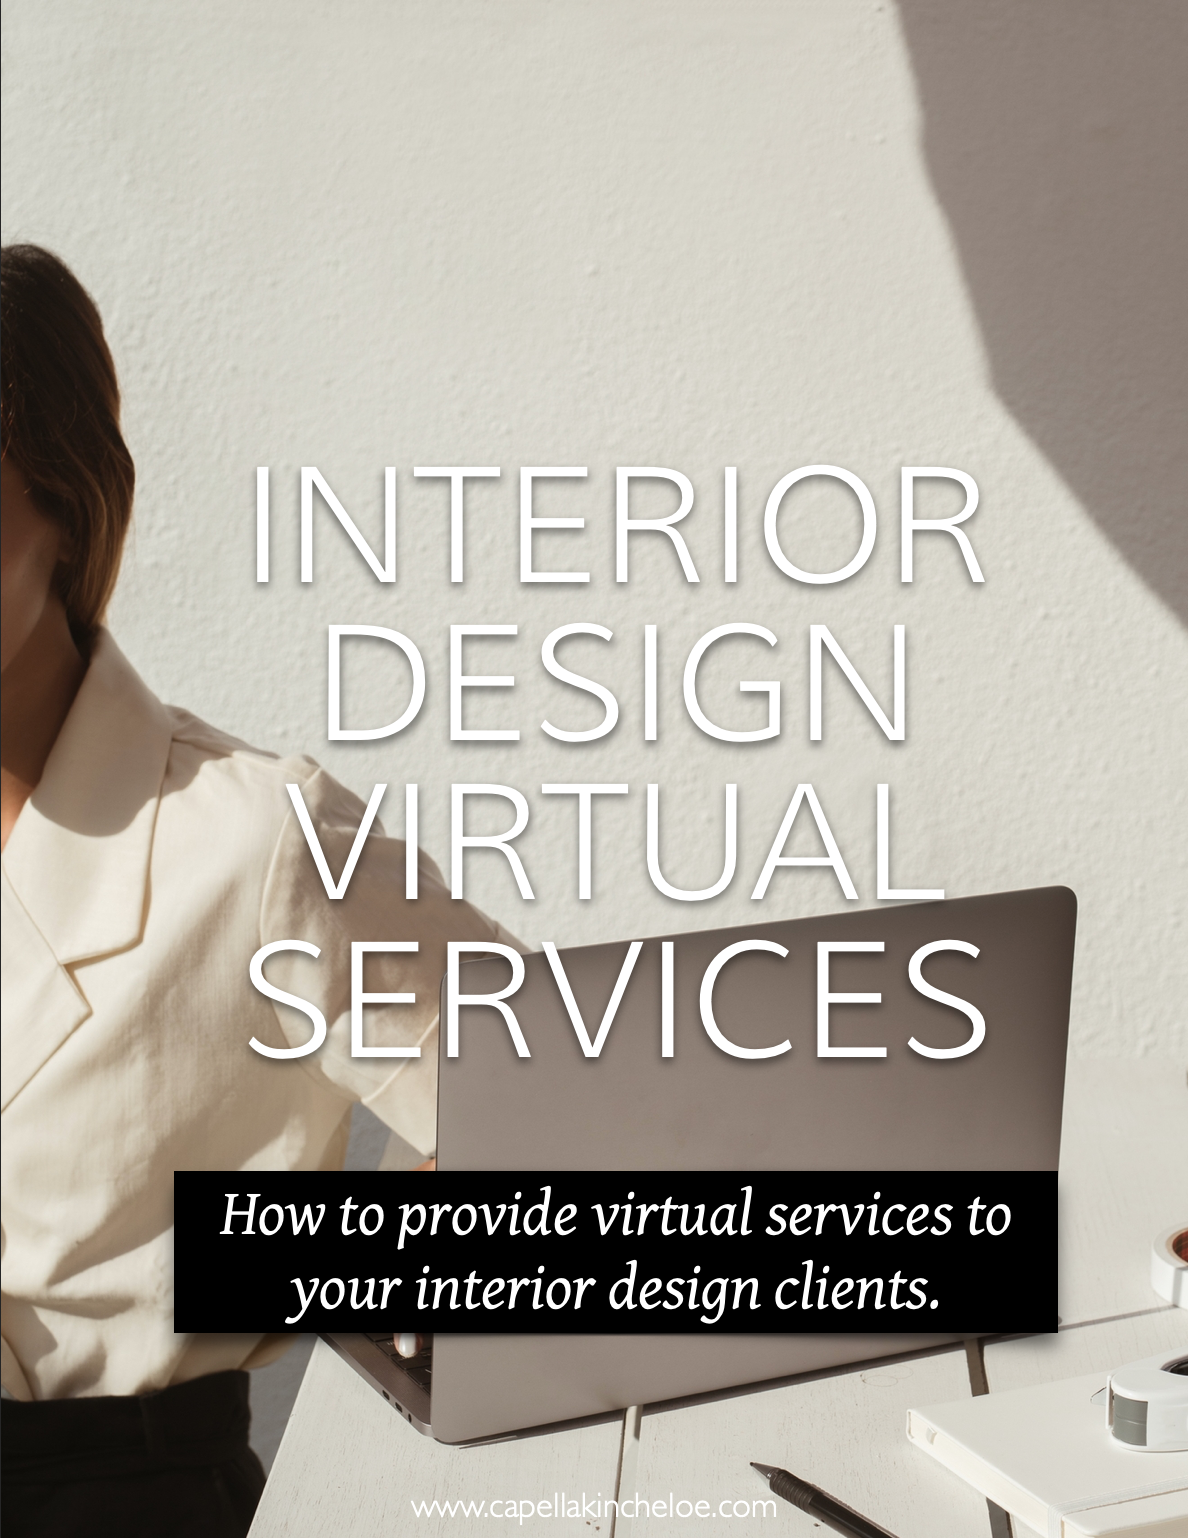 Virtual Interior Design Services Overview — Capella Kincheloe